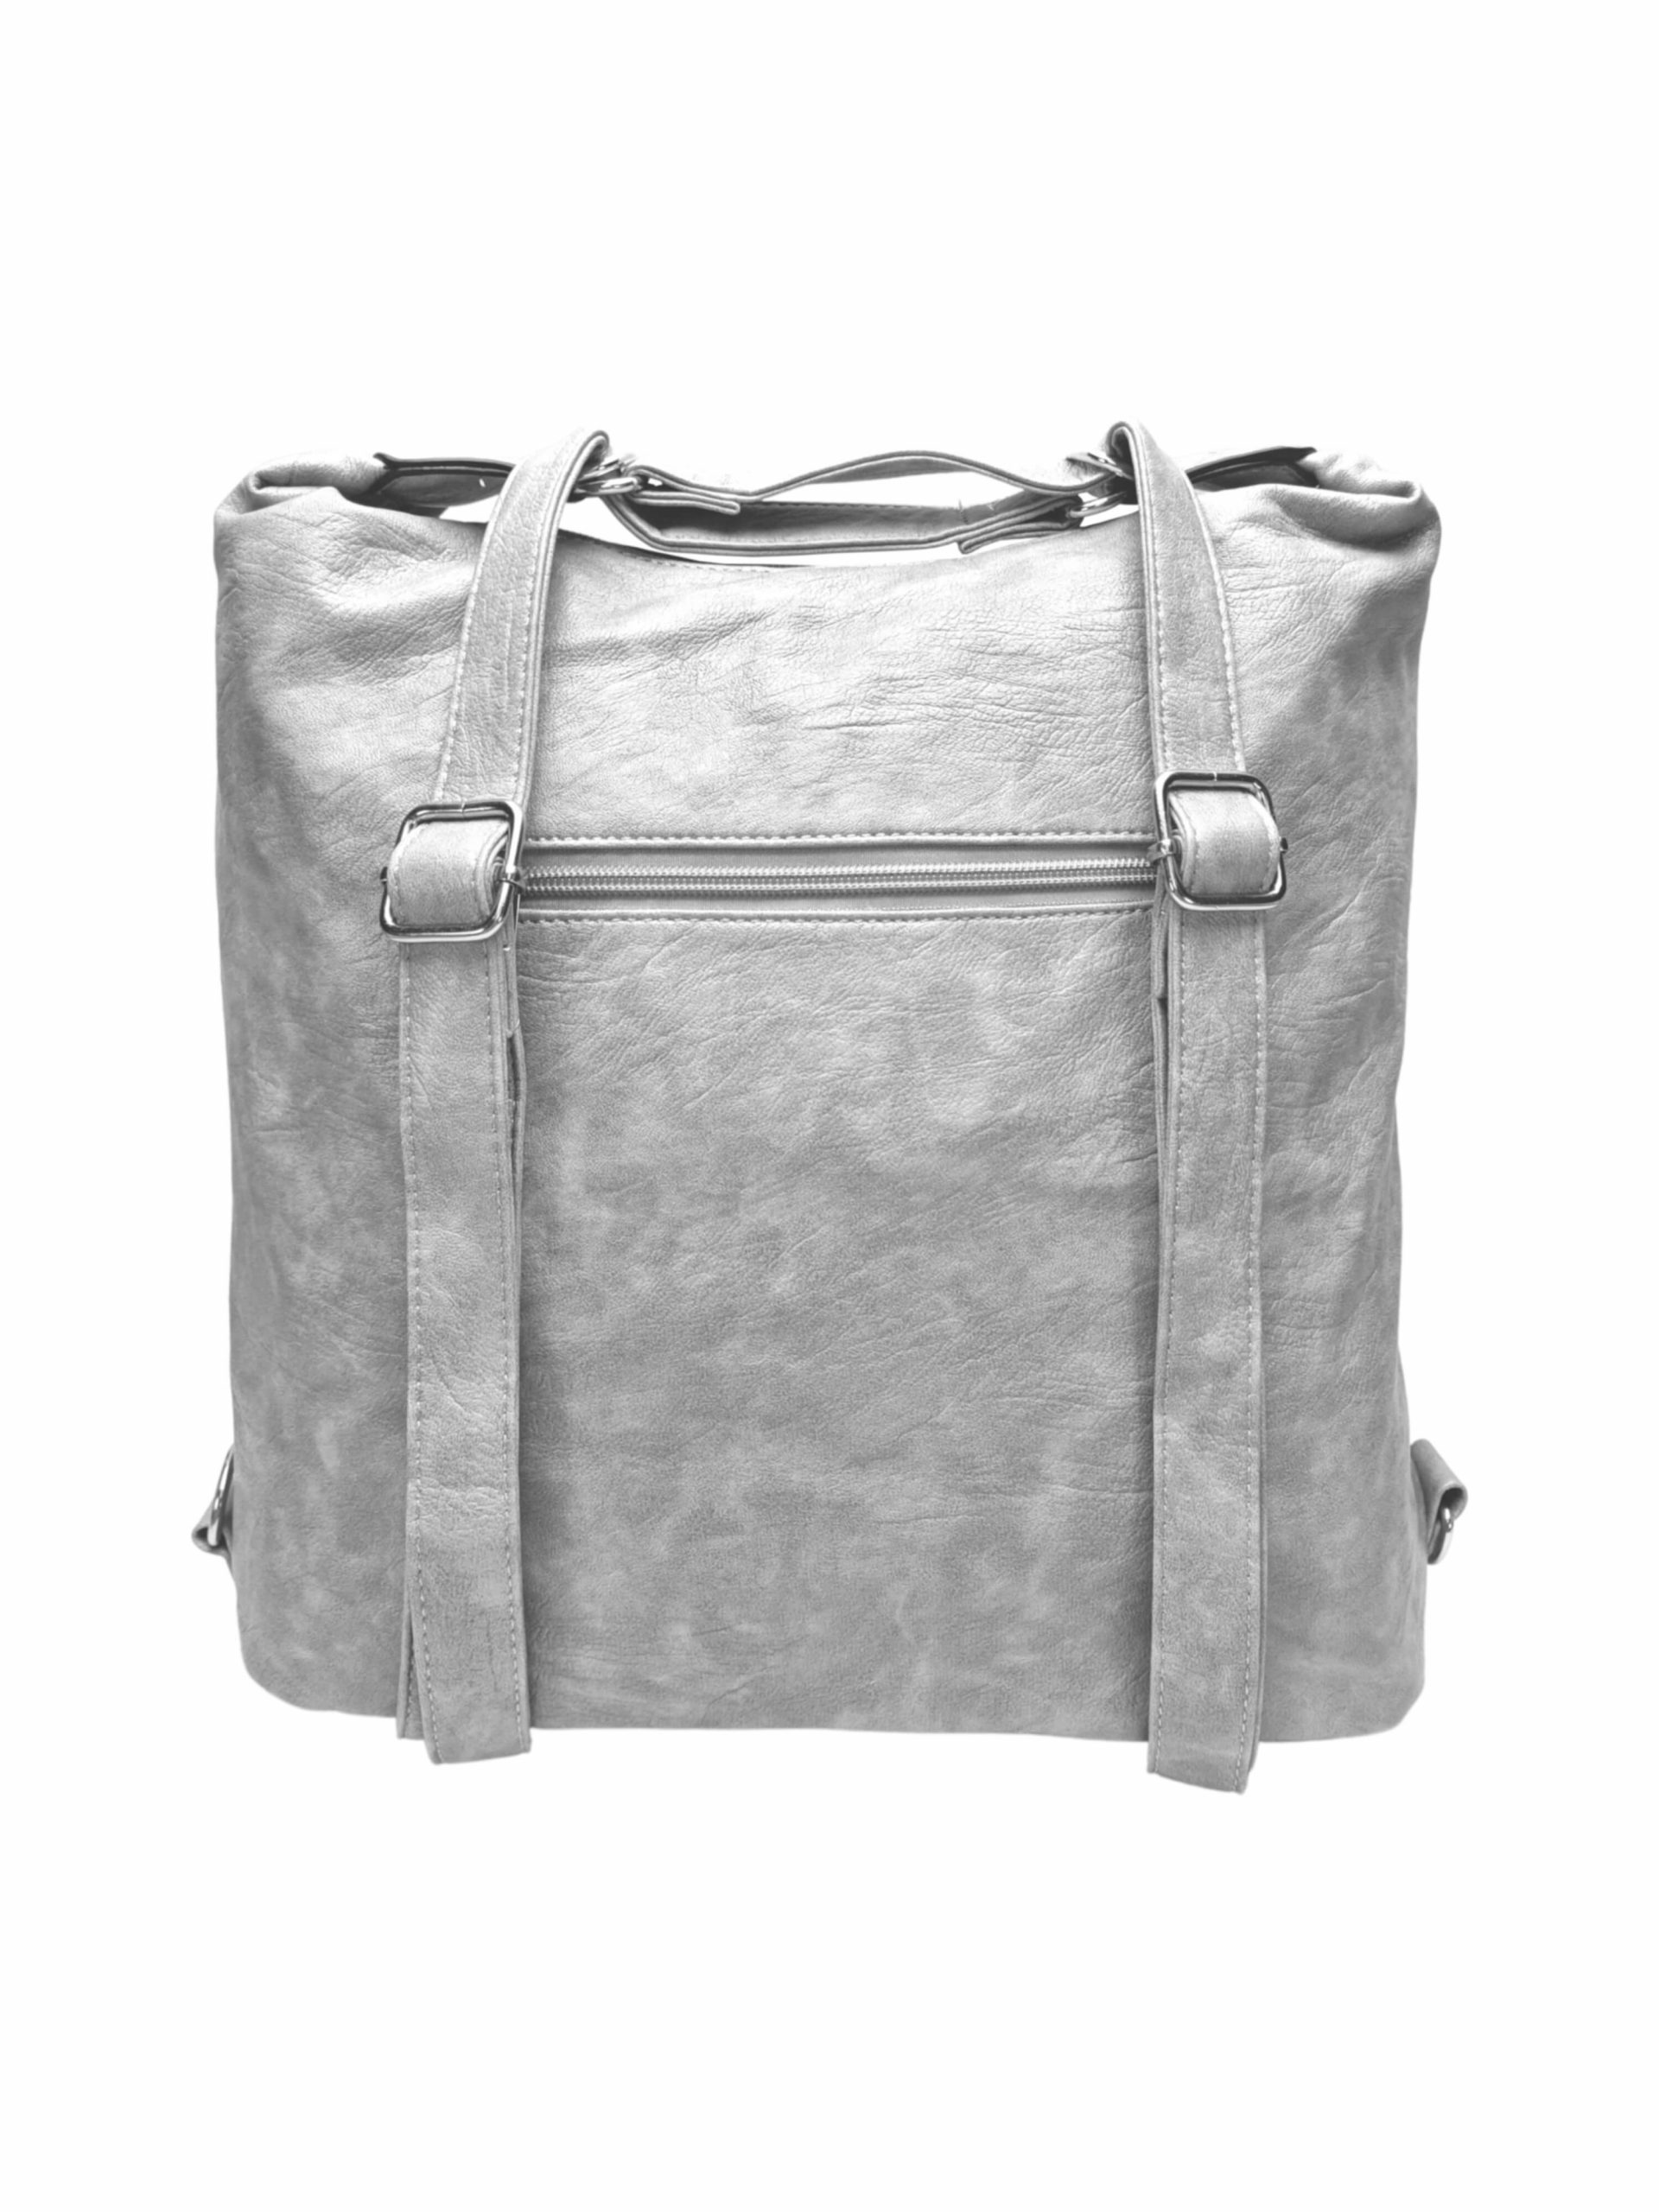 Velký světle šedý kabelko-batoh 2v1 s kapsami, Tapple, H23029, zadní strana kabelko-batohu 2v1 s popruhy